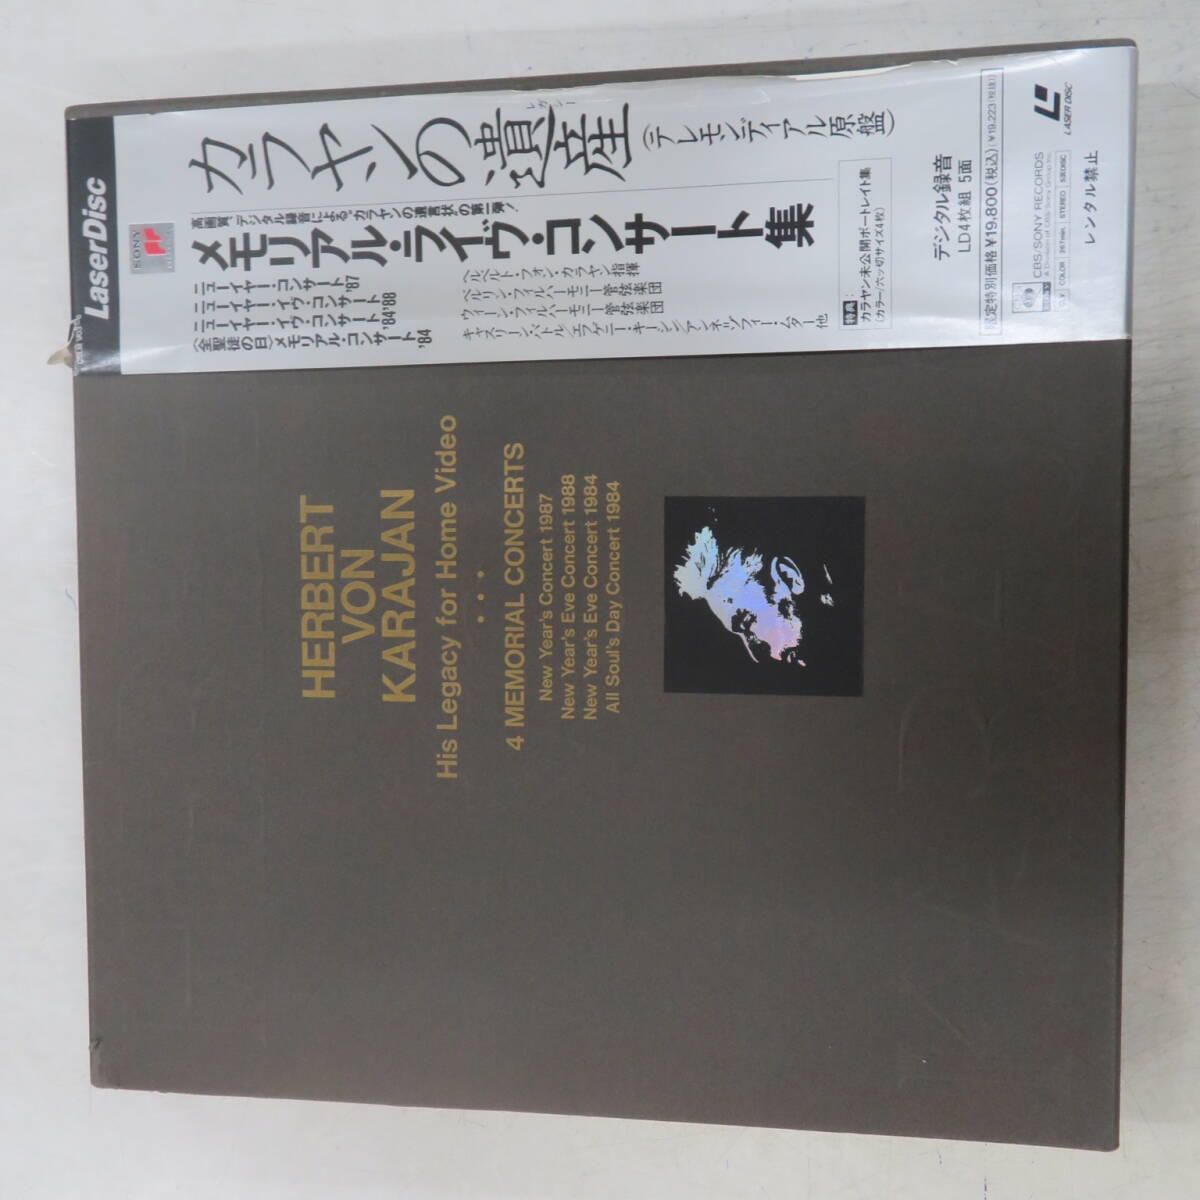 B00166213/●LD4枚組ボックス/カラヤン「カラヤン メモリアル・ライヴ・コンサート集」の画像1